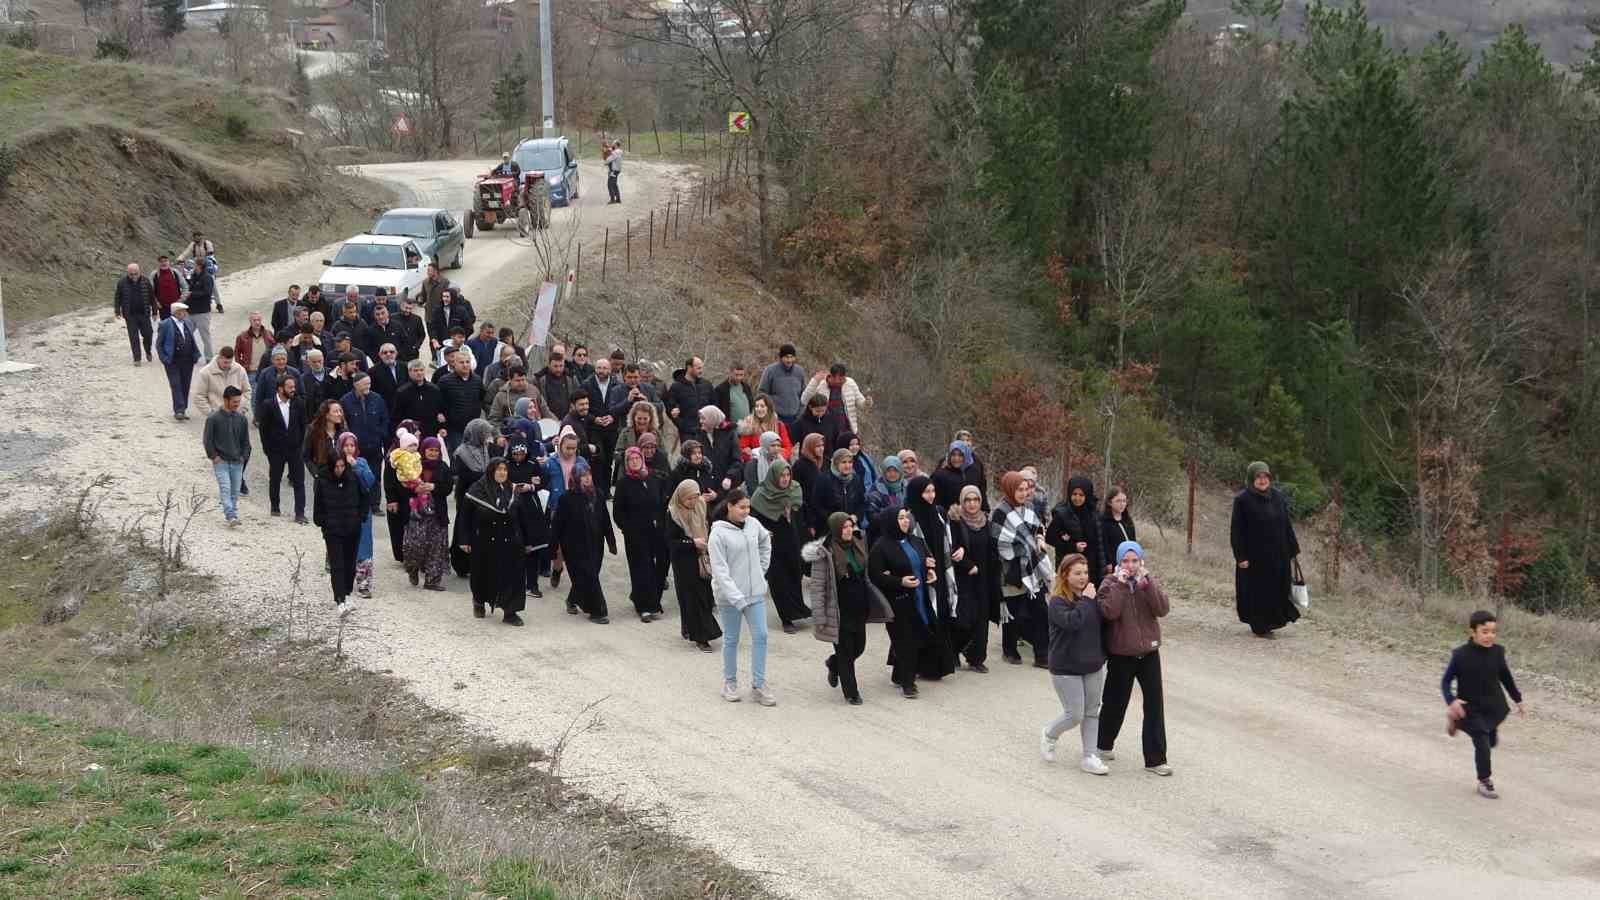 (Özel) Bursa’da mahkemenin mermer ocağı kararını duyan köylüler davul zurnayla yürüdü